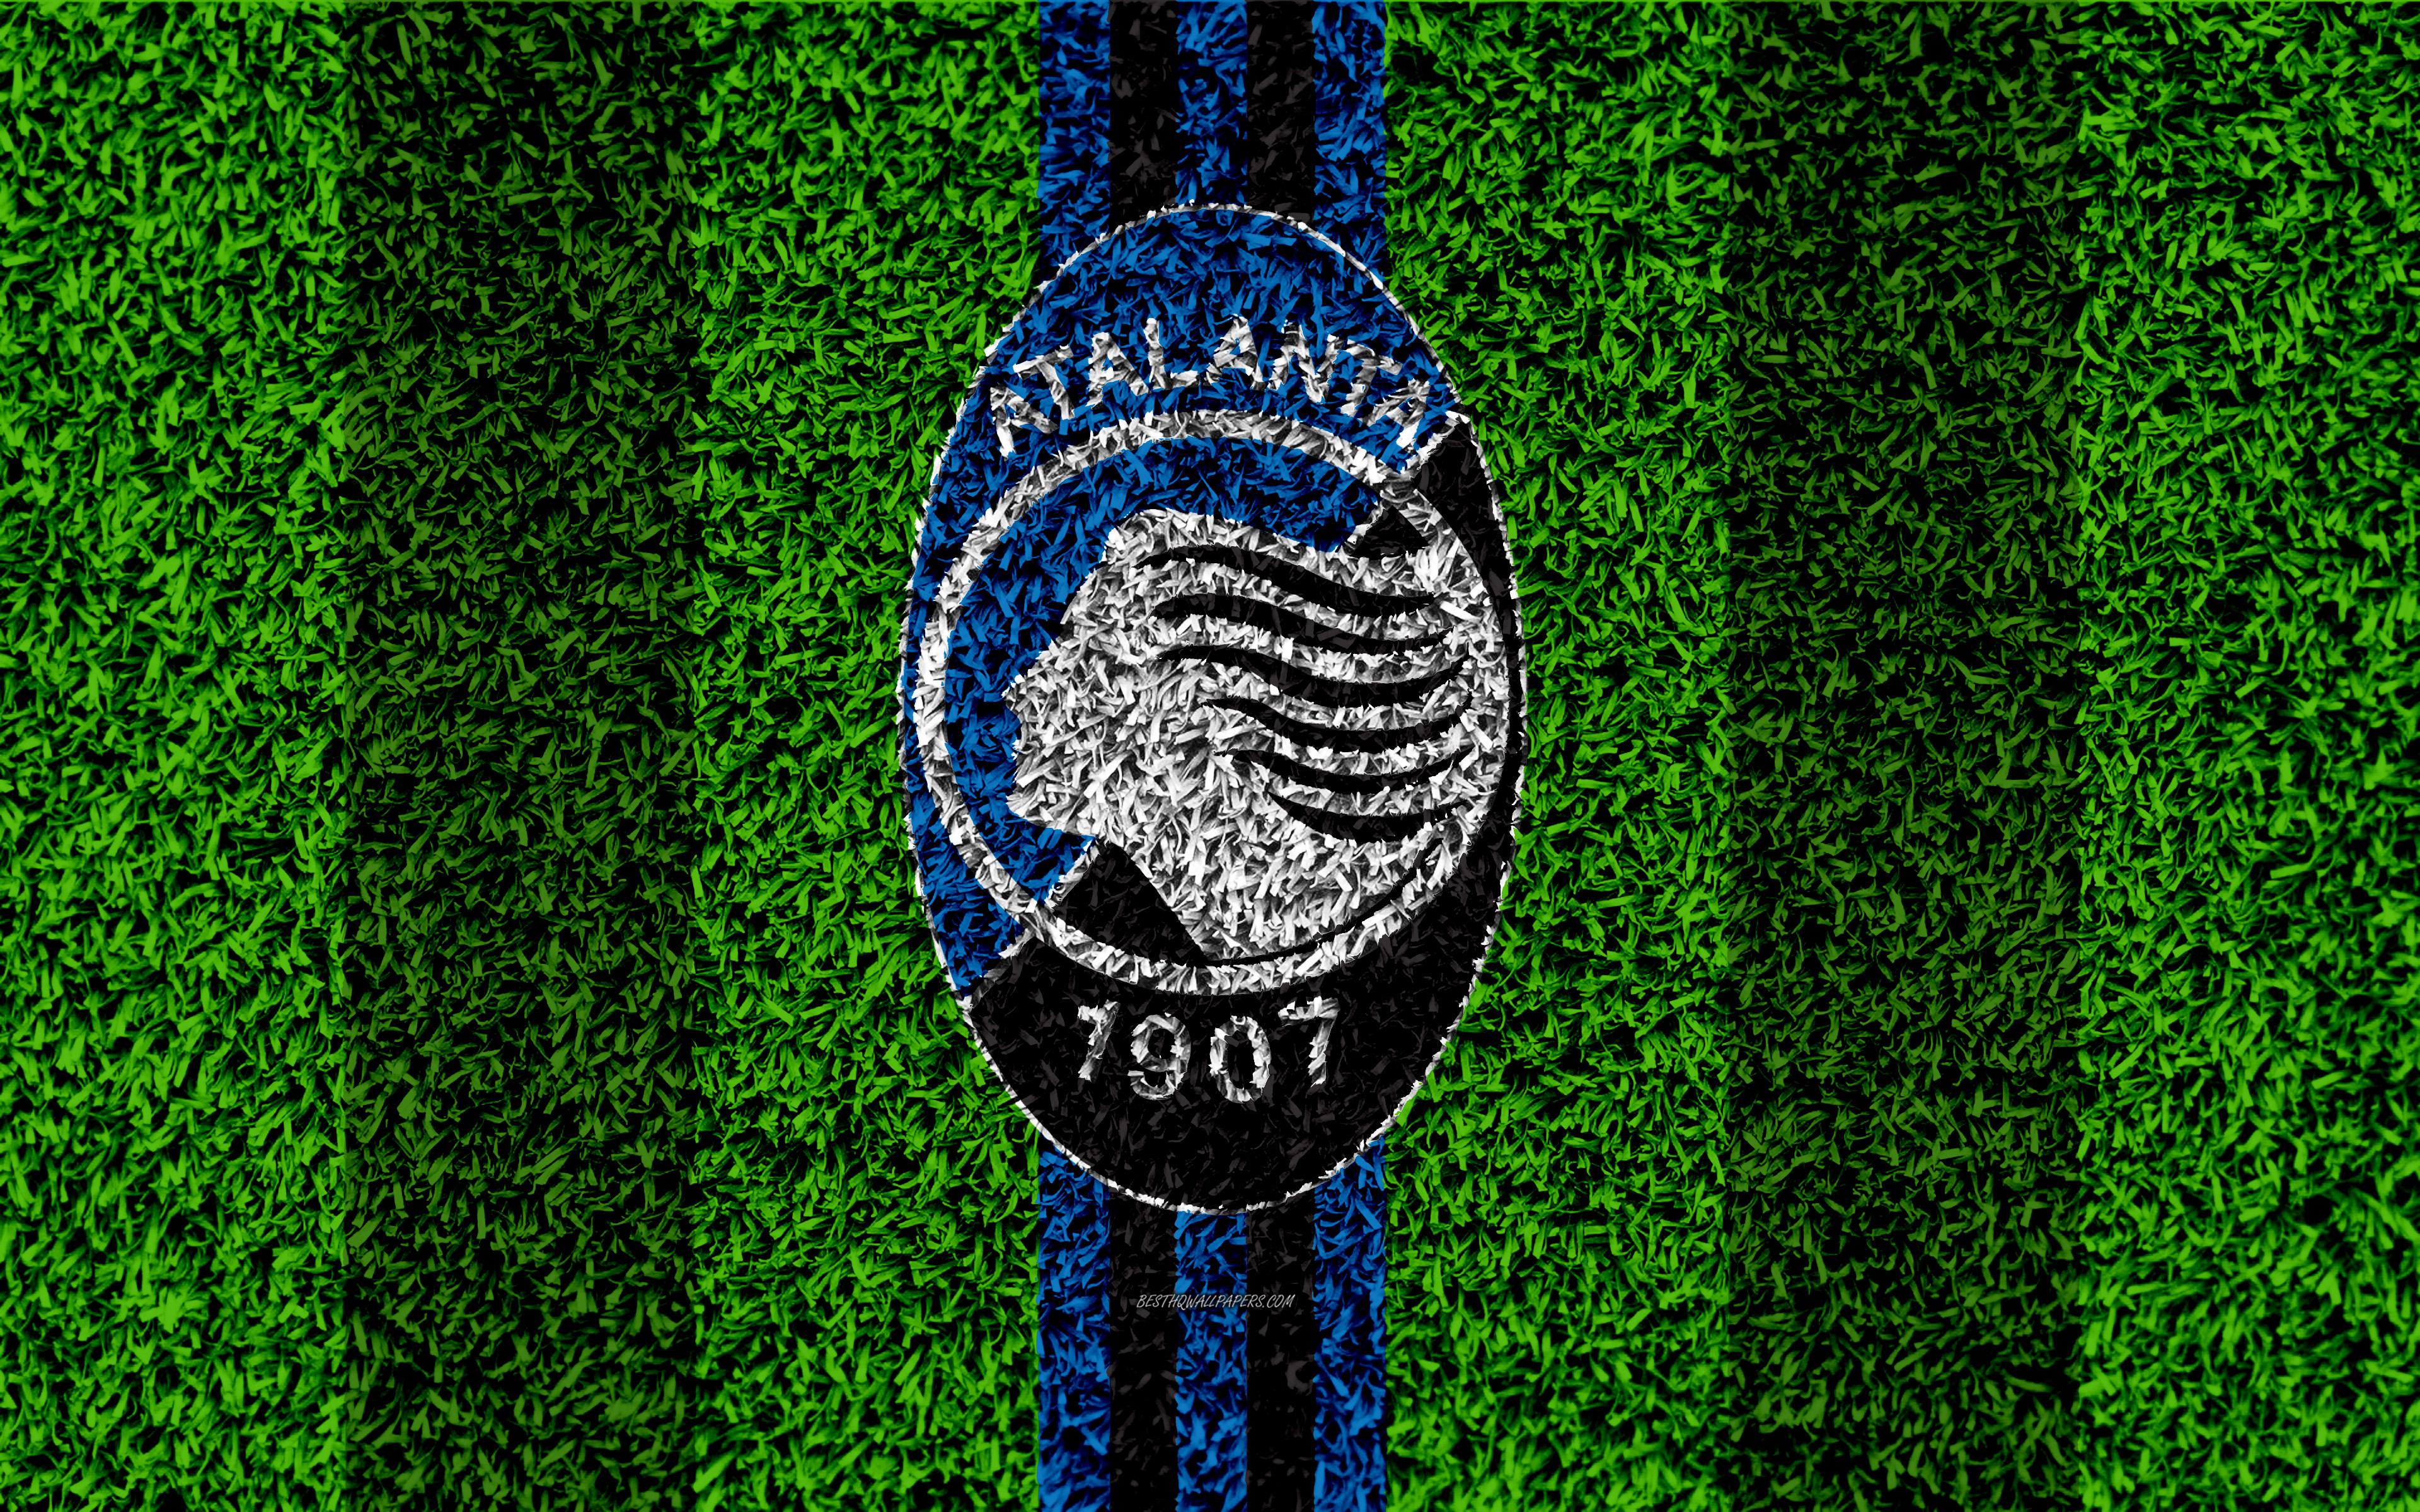 Download wallpaper Atalanta BC, 4k, logo, football lawn, Italian